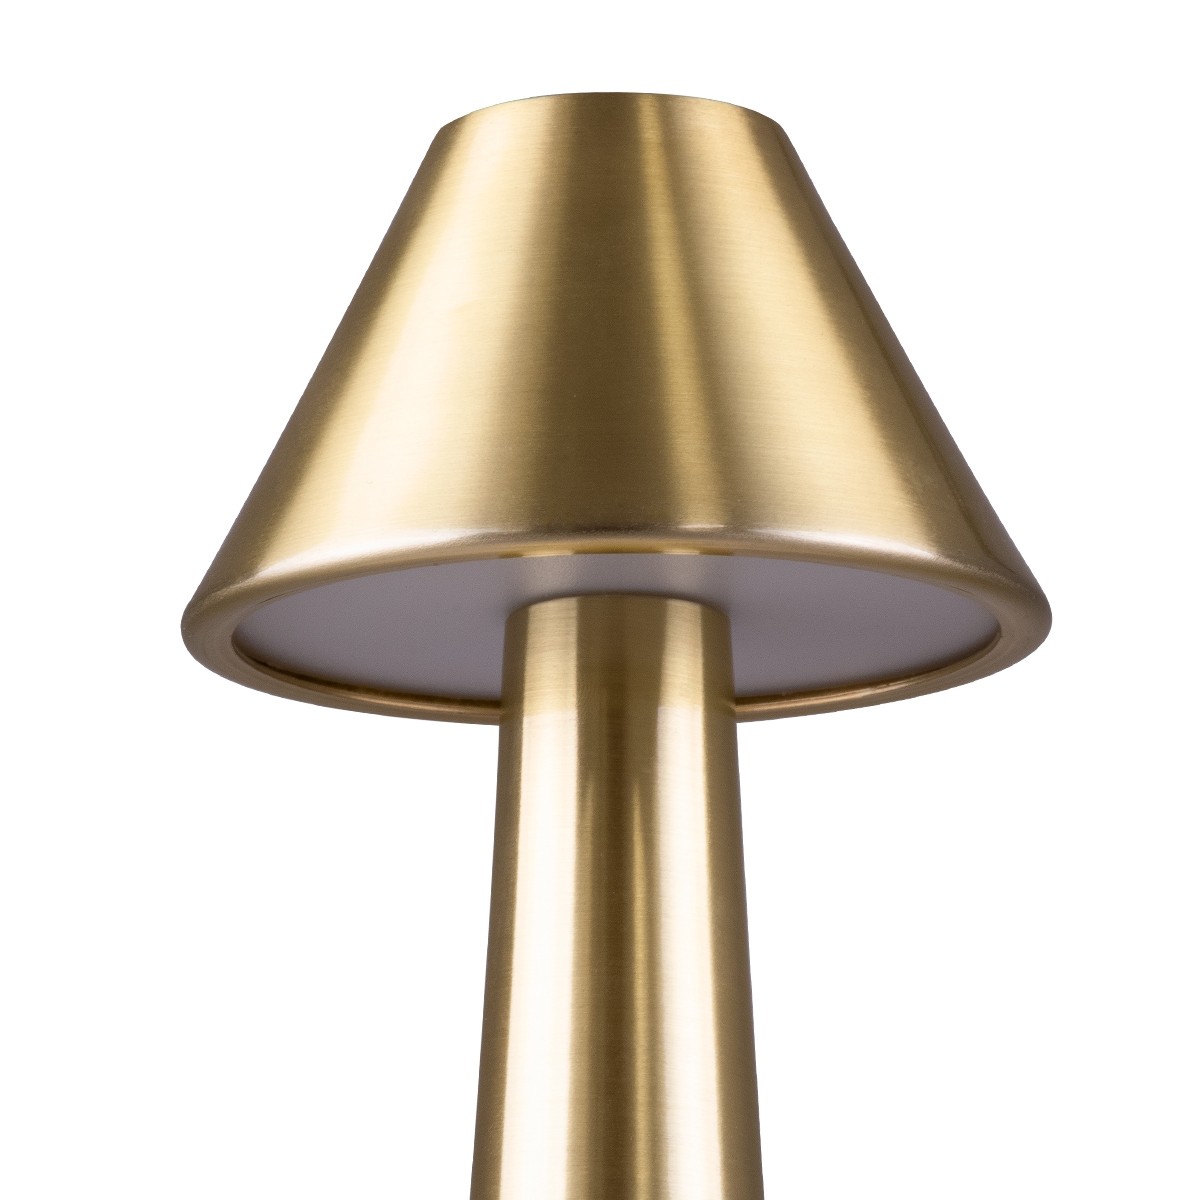 LED Επιτραπέζιο Φωτιστικό Χρυσό 1.5W MOLLY Επαναφορτιζόμενο με Μπαταρία και Διακόπτη Αφής Dimmable -  Φ10 x 23cm